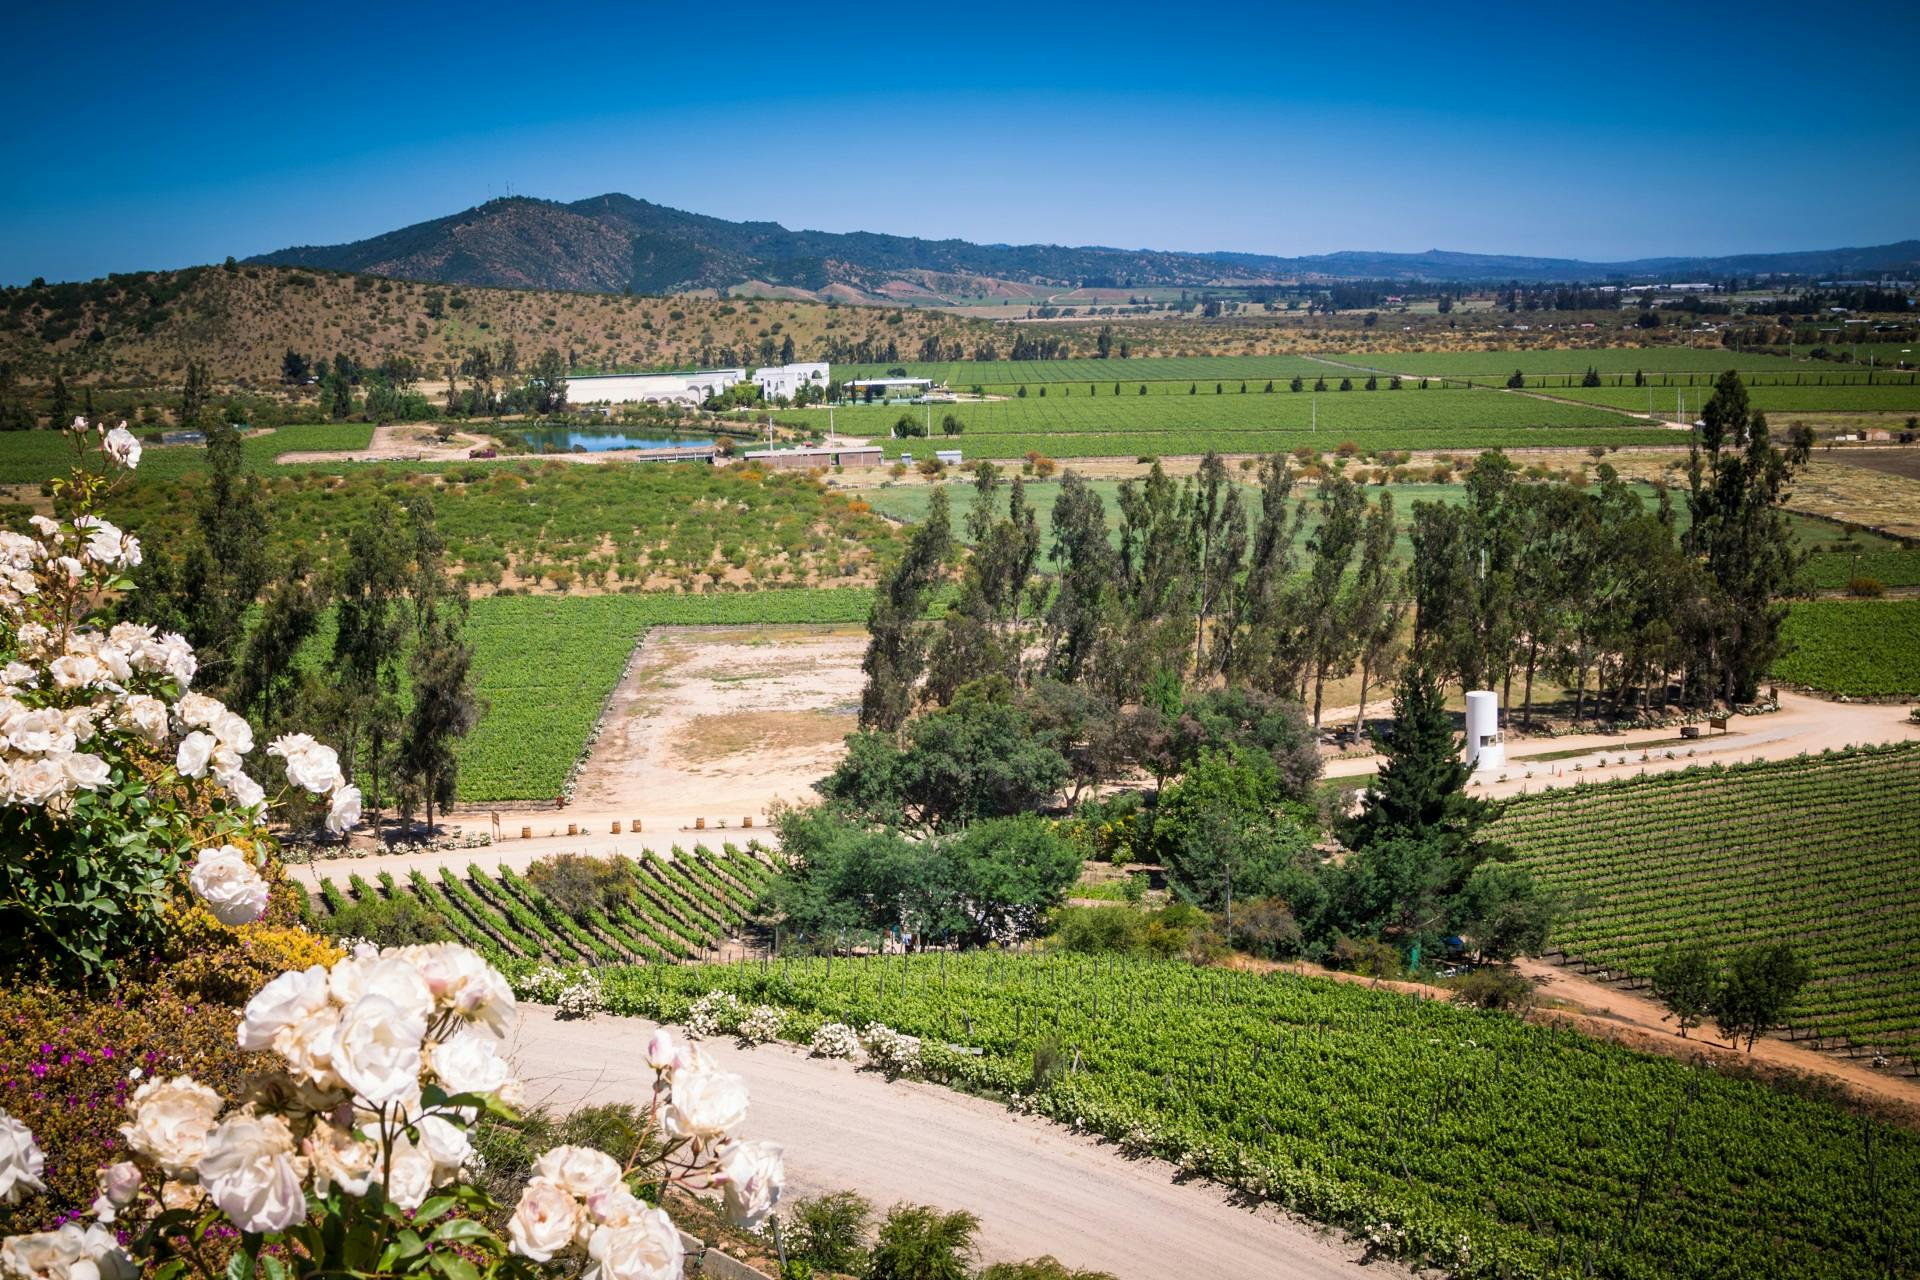 Führung durch Casablanca Valley und Matetic Vineyards mit Weinprobe